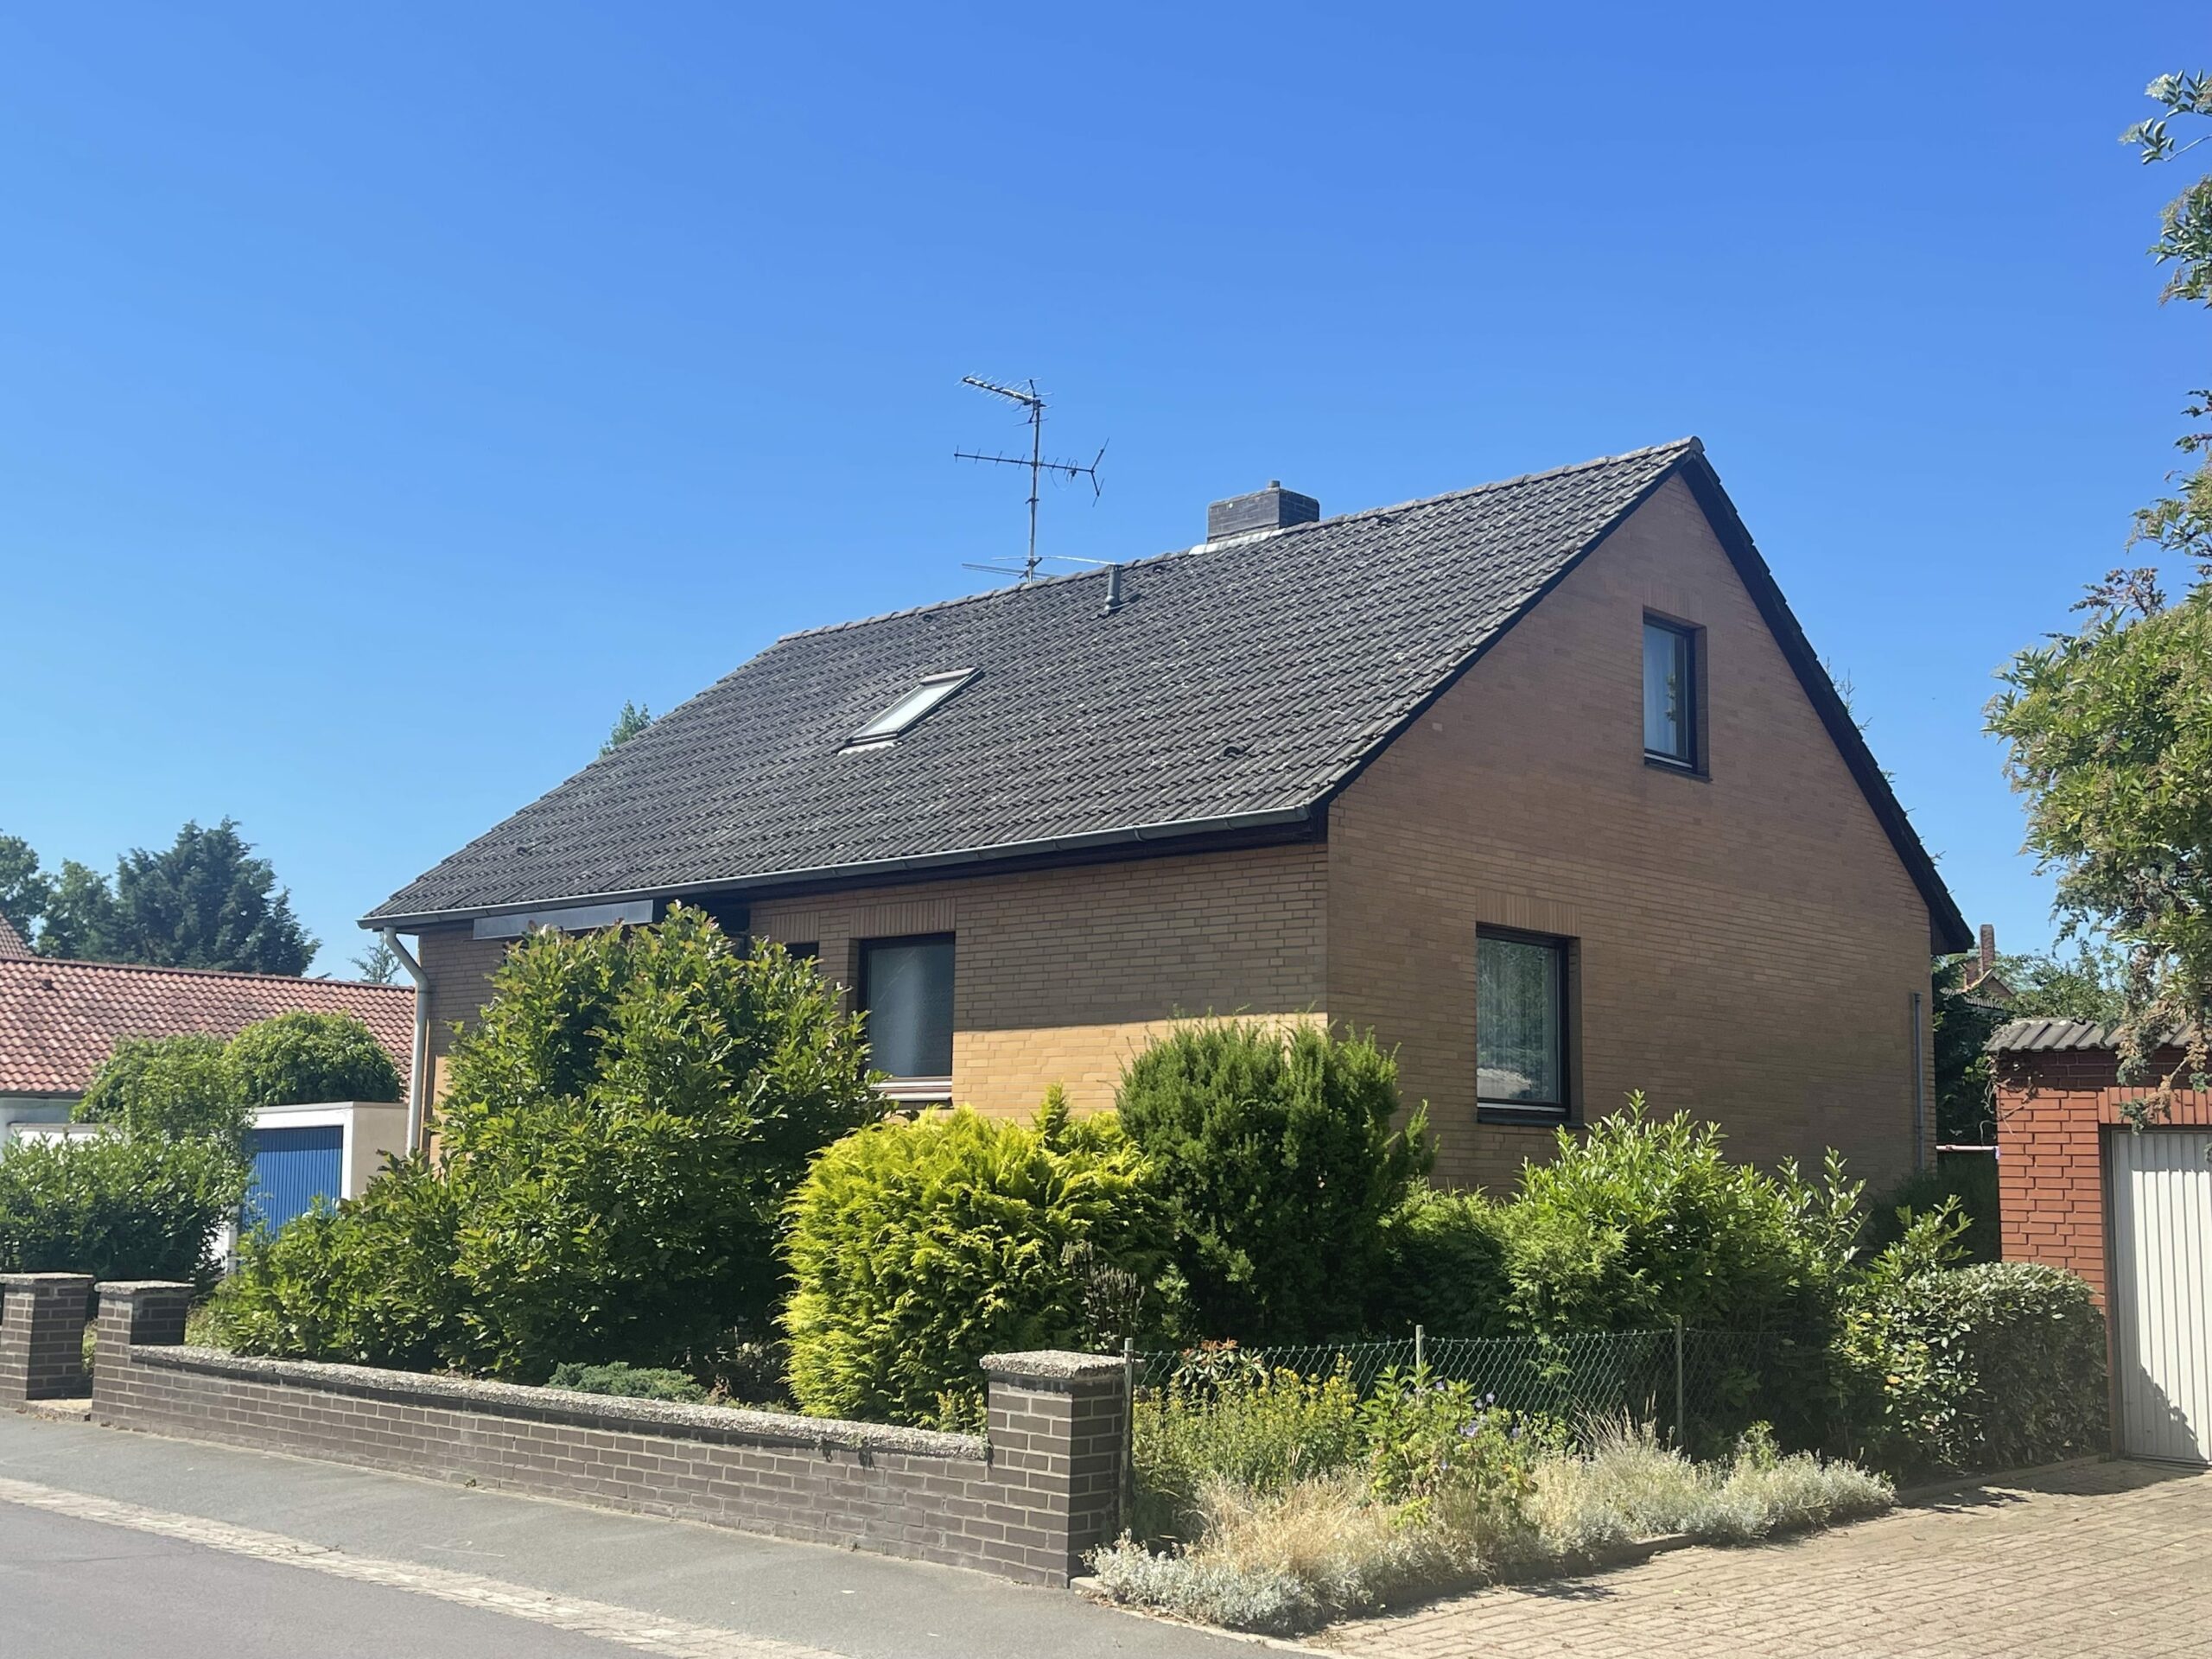 Einfamilienhaus mit Einliegerwohnung, Vollkeller und Garage, 30890 Barsinghausen, Einfamilienhaus